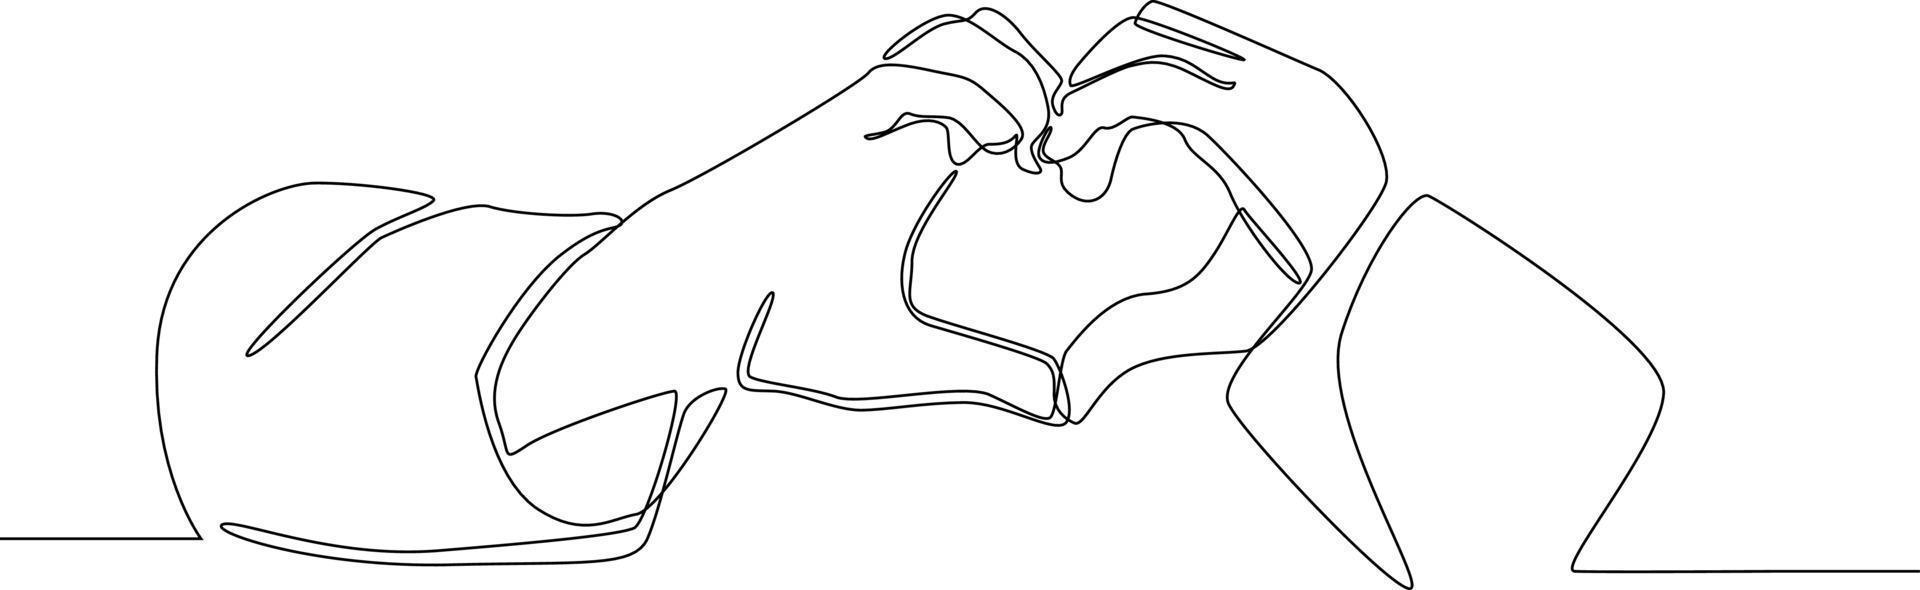 kontinuierliche Strichzeichnung der Hand in Herzform. Symbolmedizin. Vektor-Illustration. vektor